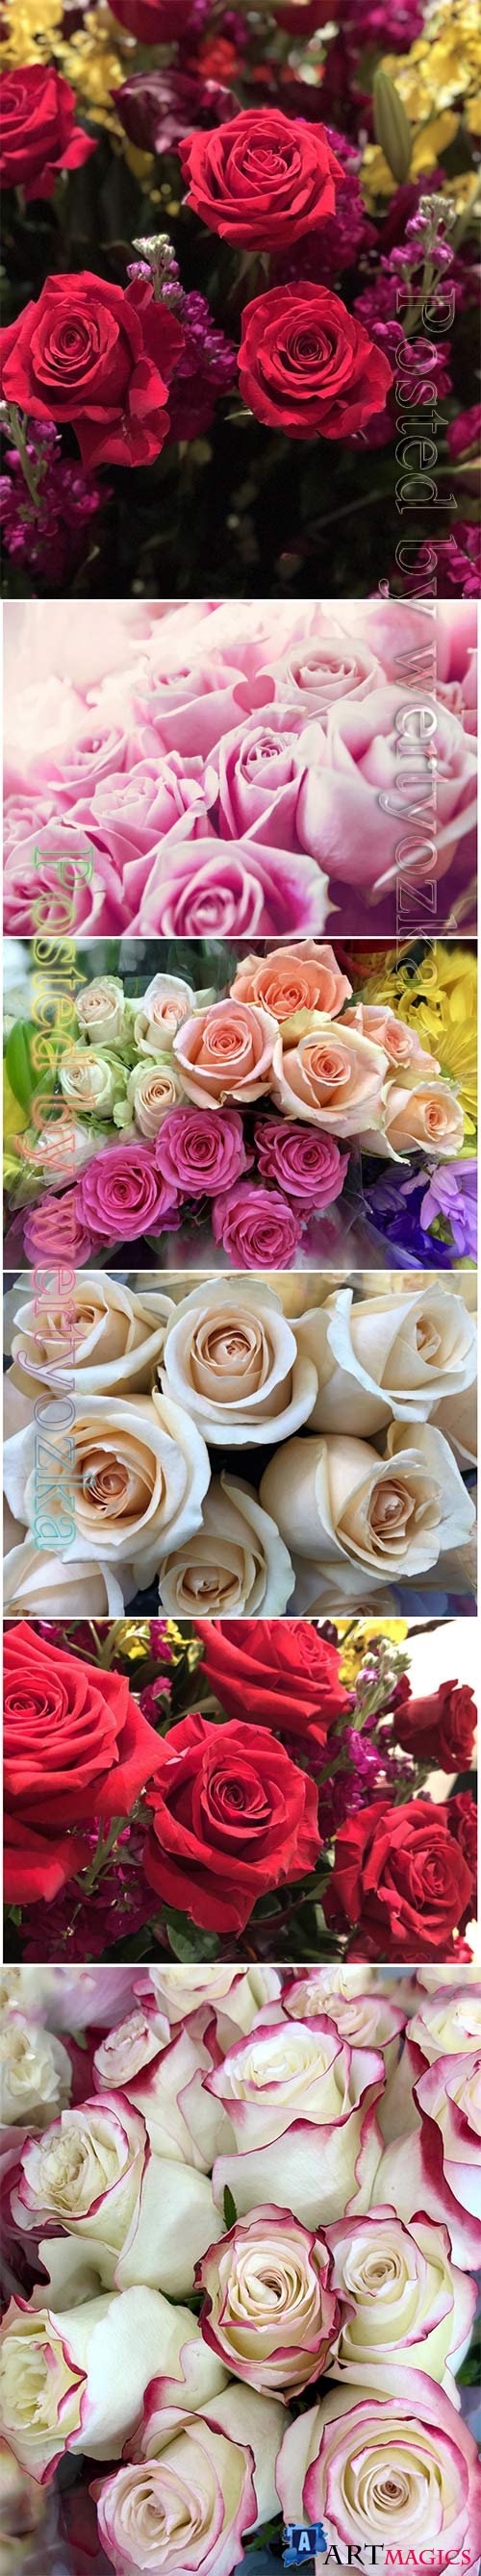 Roses beautiful stock photo